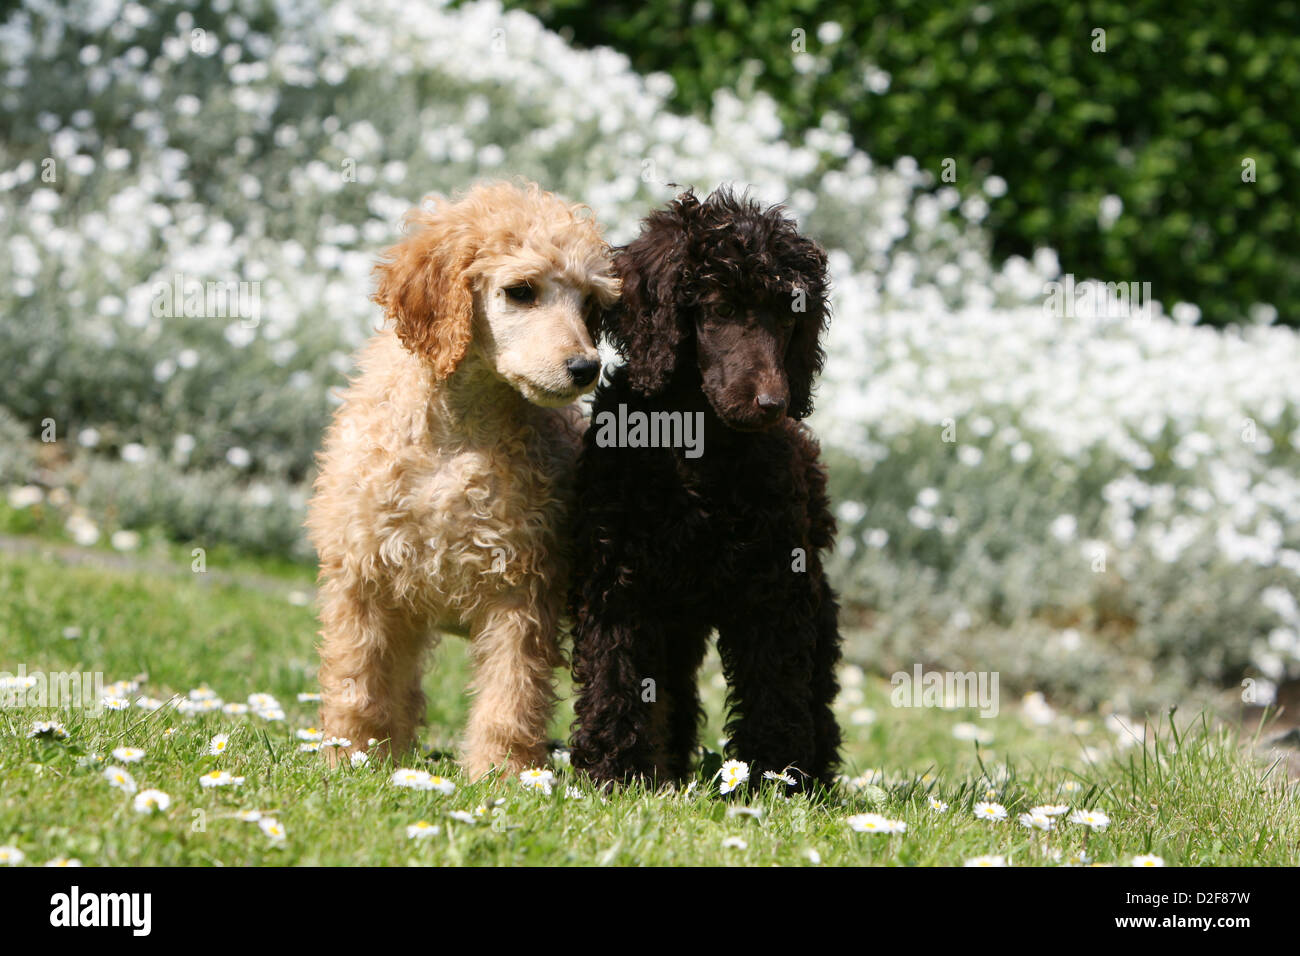 Pudel Hund / Pudel / Caniche standard Grande Riese zwei Welpen verschiedene  Farben (Apricot und braun) steht in einem Garten Stockfotografie - Alamy